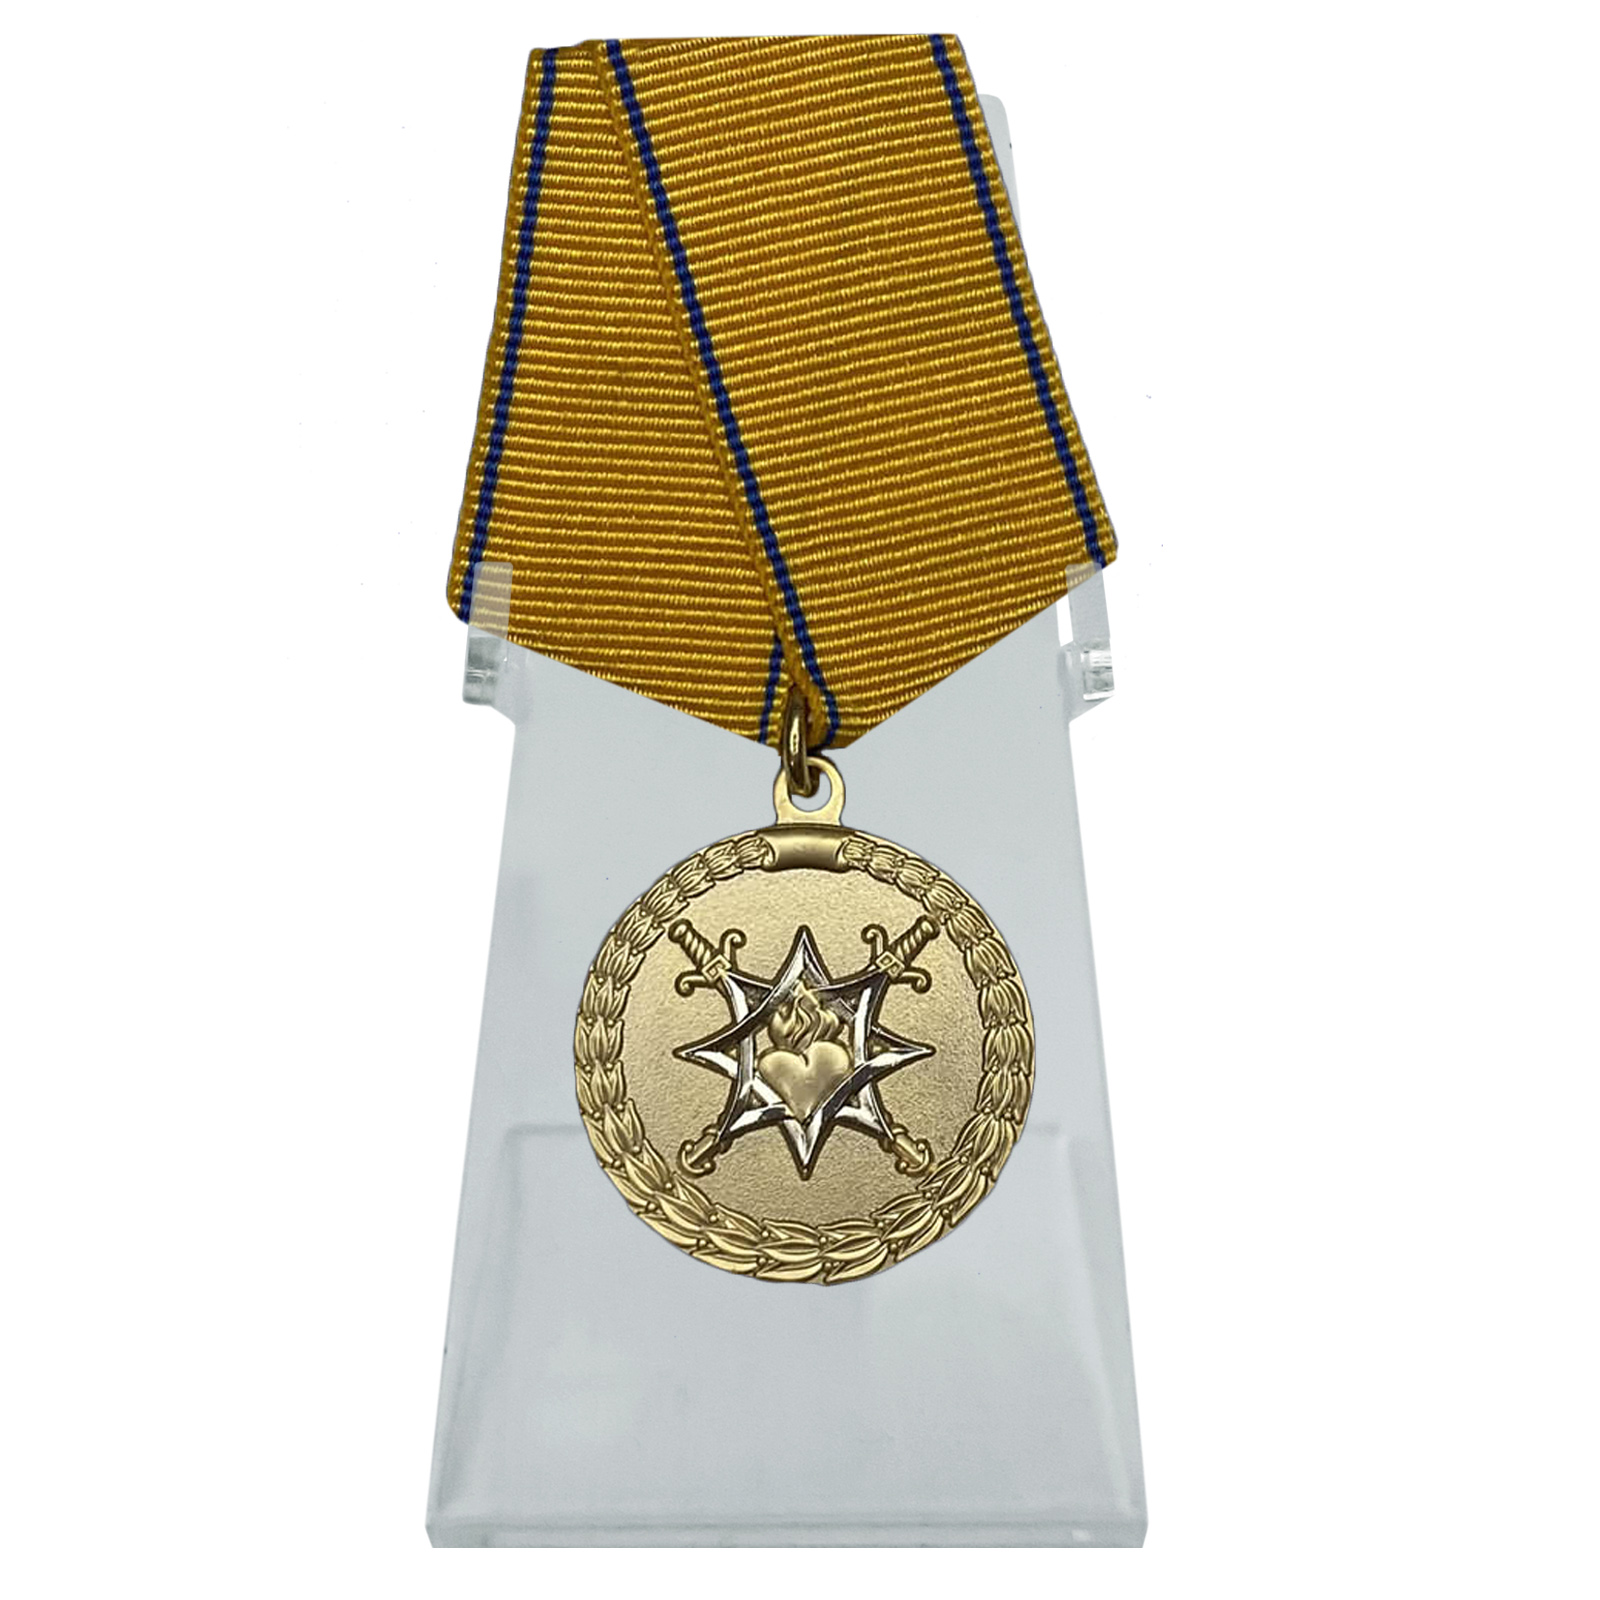 Купить медаль За смелость во имя спасения МВД России на подставке в подарок